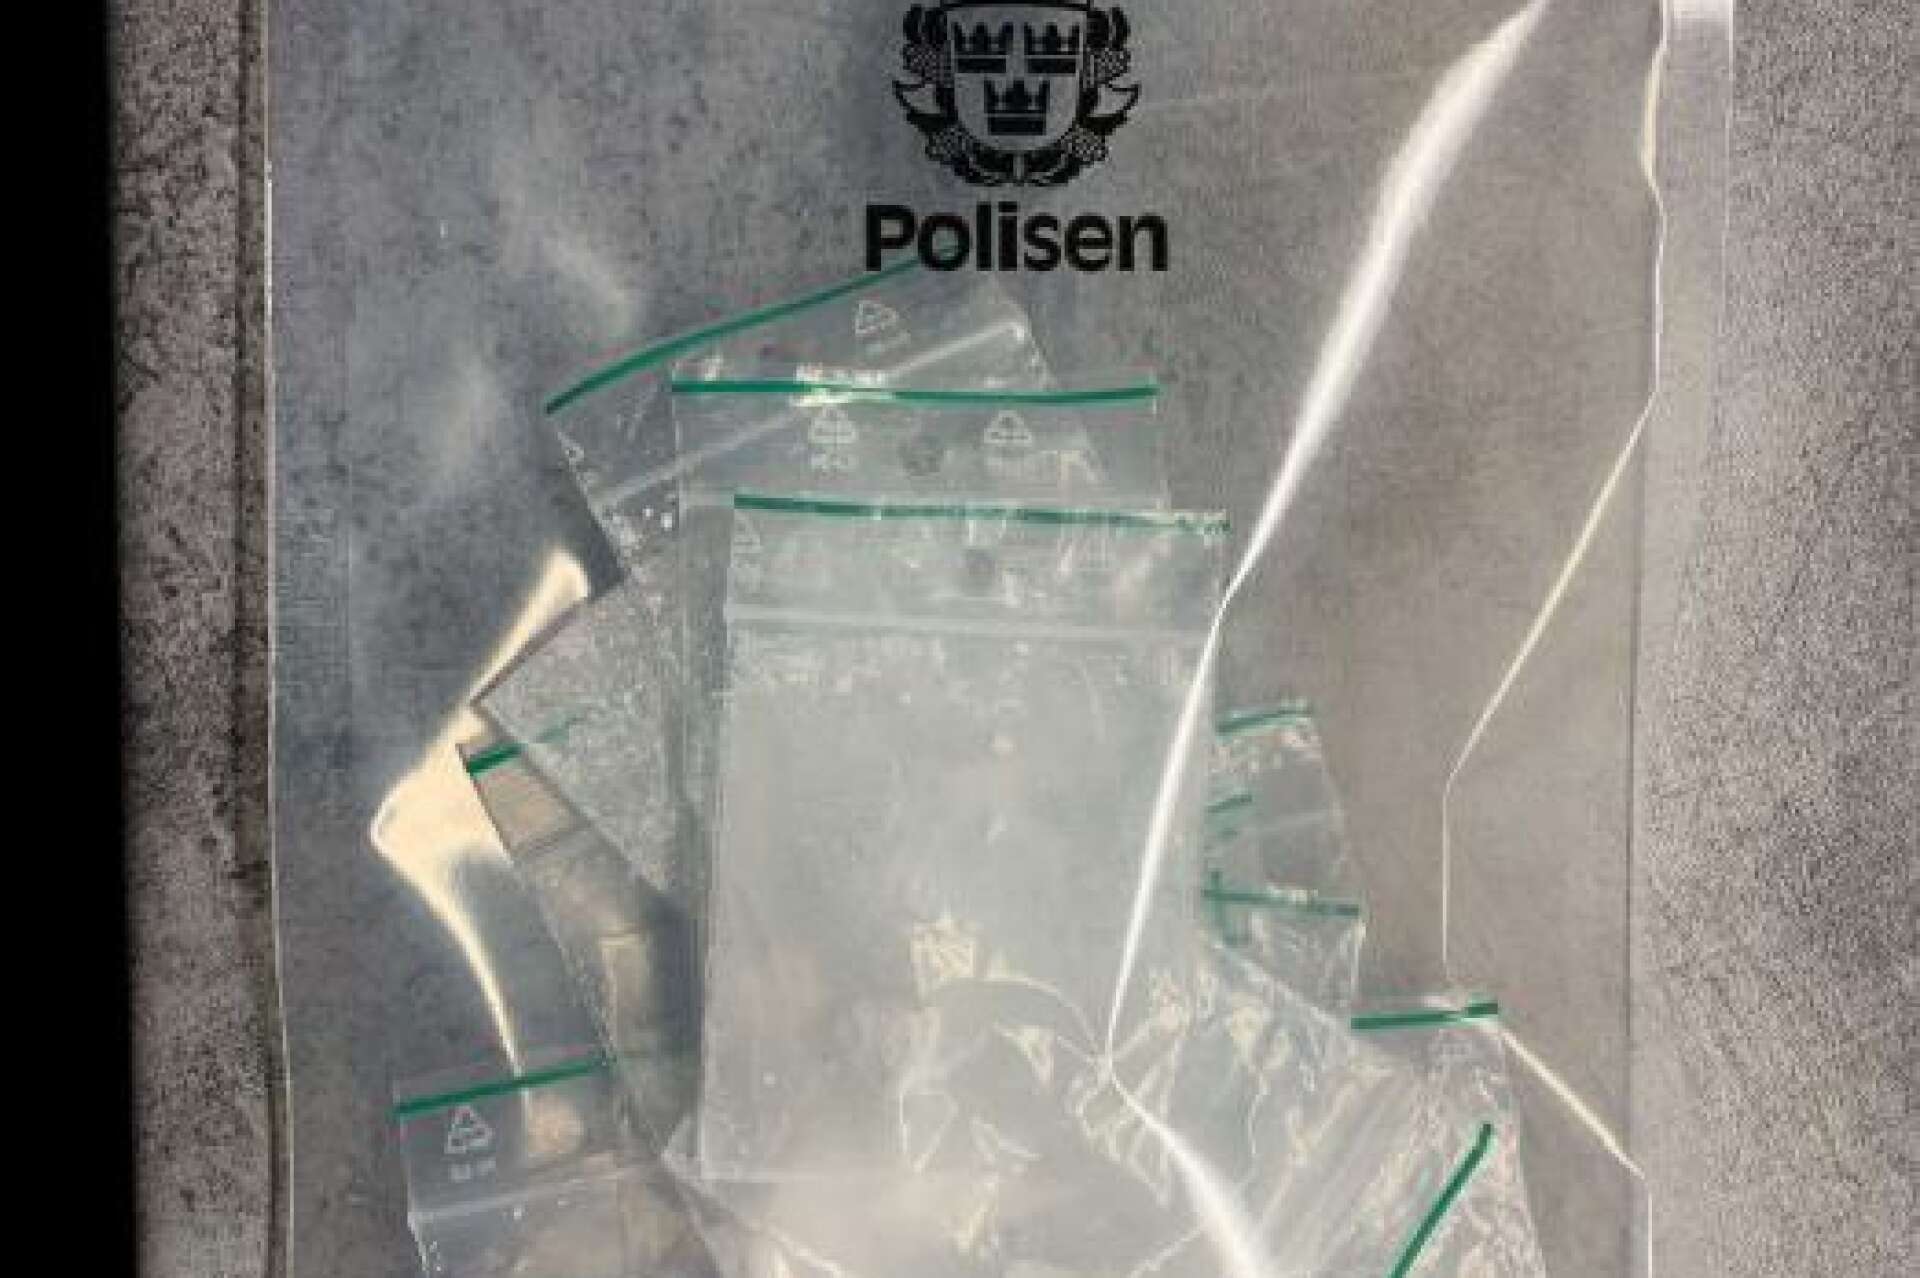 Polisen i Kristinehamn såg en misstänkt narkotikaaffär som ledde dem till ett förråd. Där låg kokain och narkotikaklassad medicin för nästan 150 000 kronor.